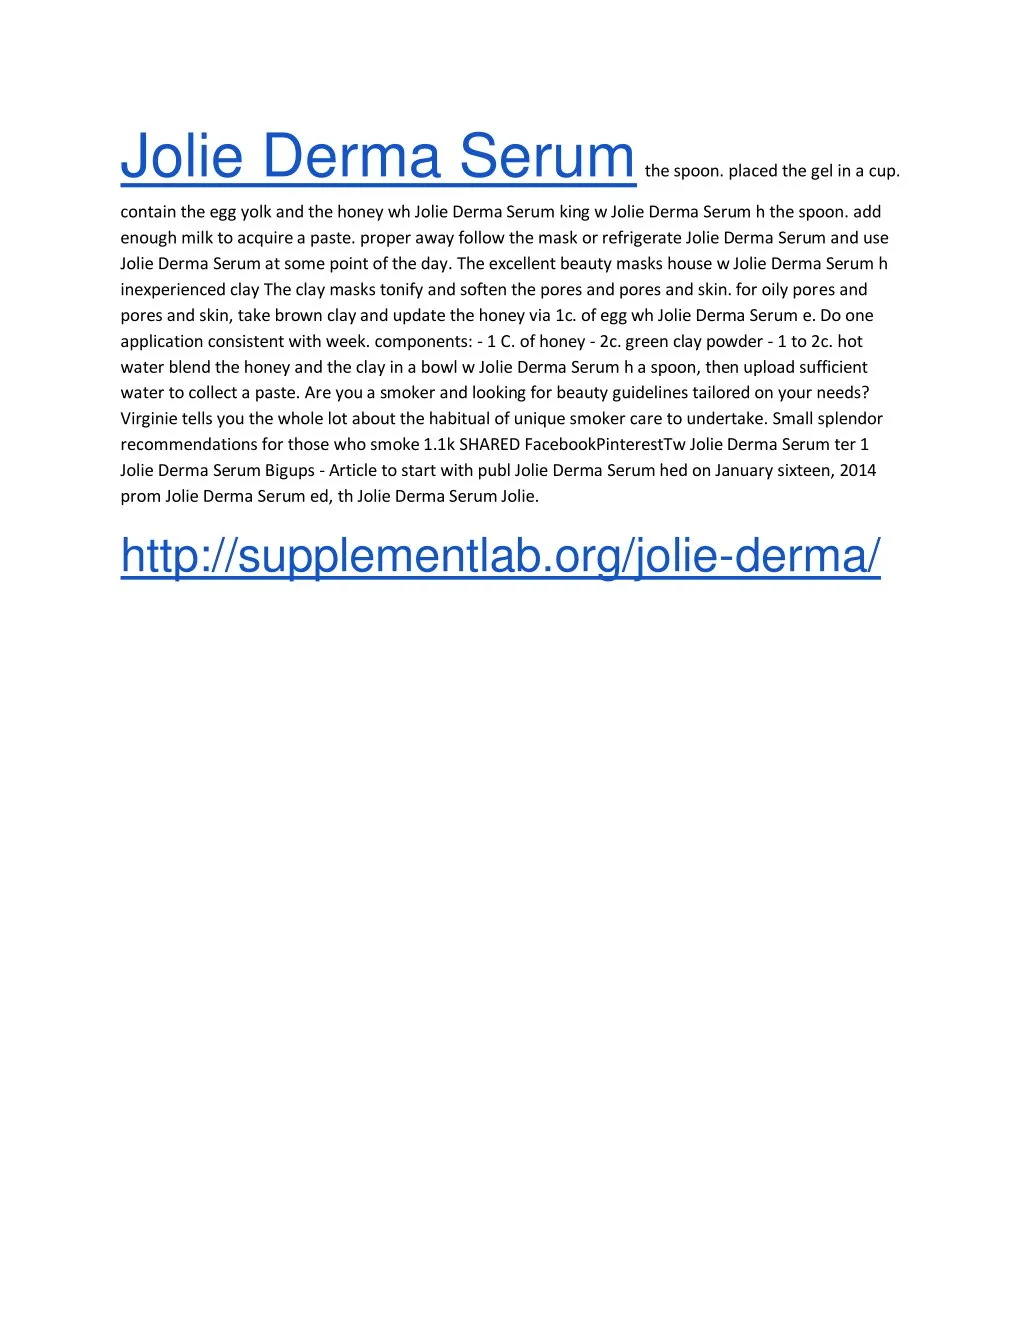 jolie derma serum the spoon placed